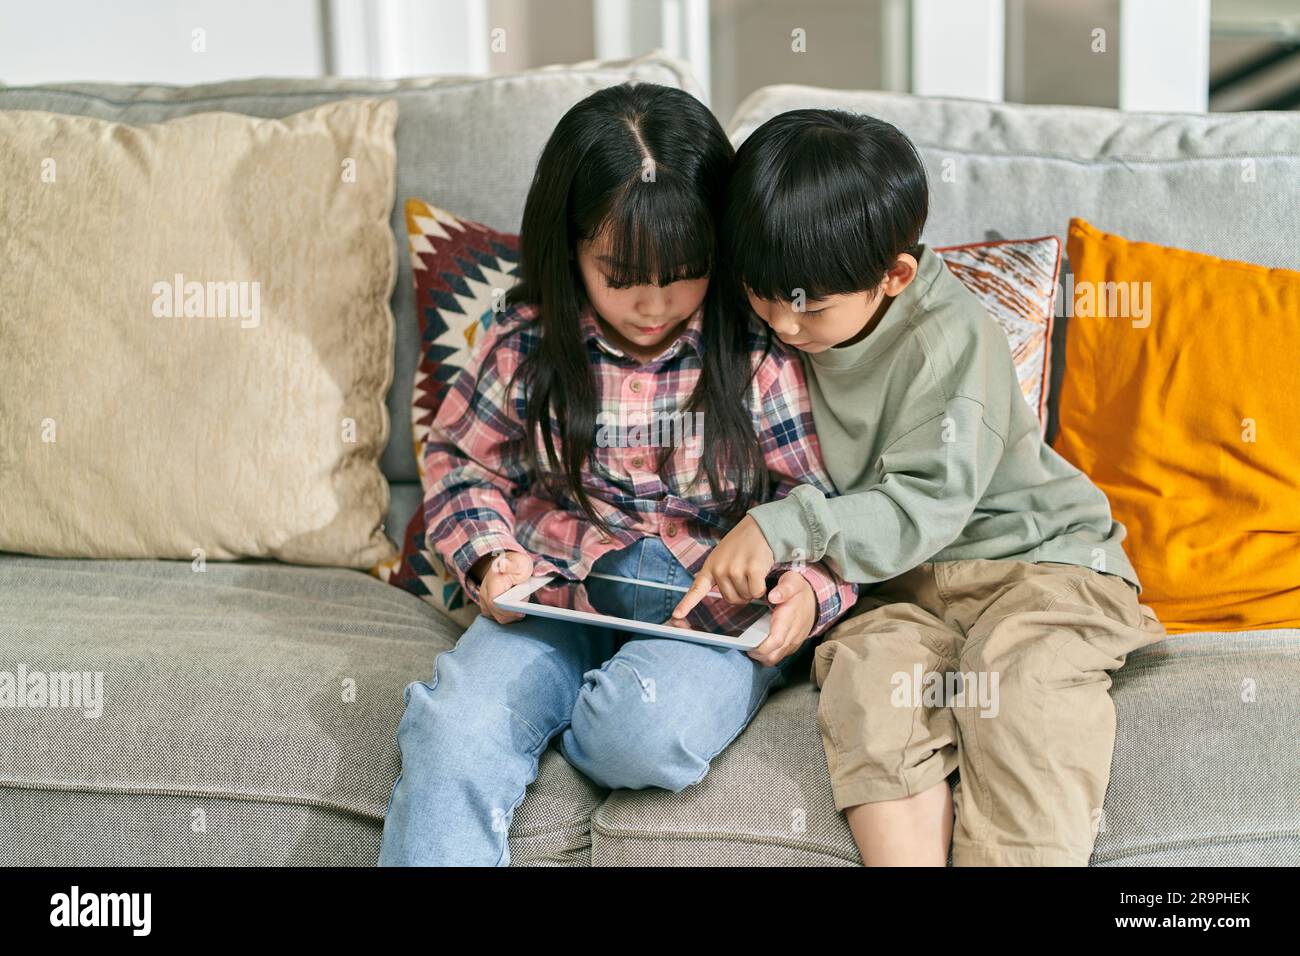 deux enfants asiatiques frère et soeur assis sur un canapé de famille à la maison jouant à un jeu d'ordinateur à l'aide d'une tablette numérique Banque D'Images